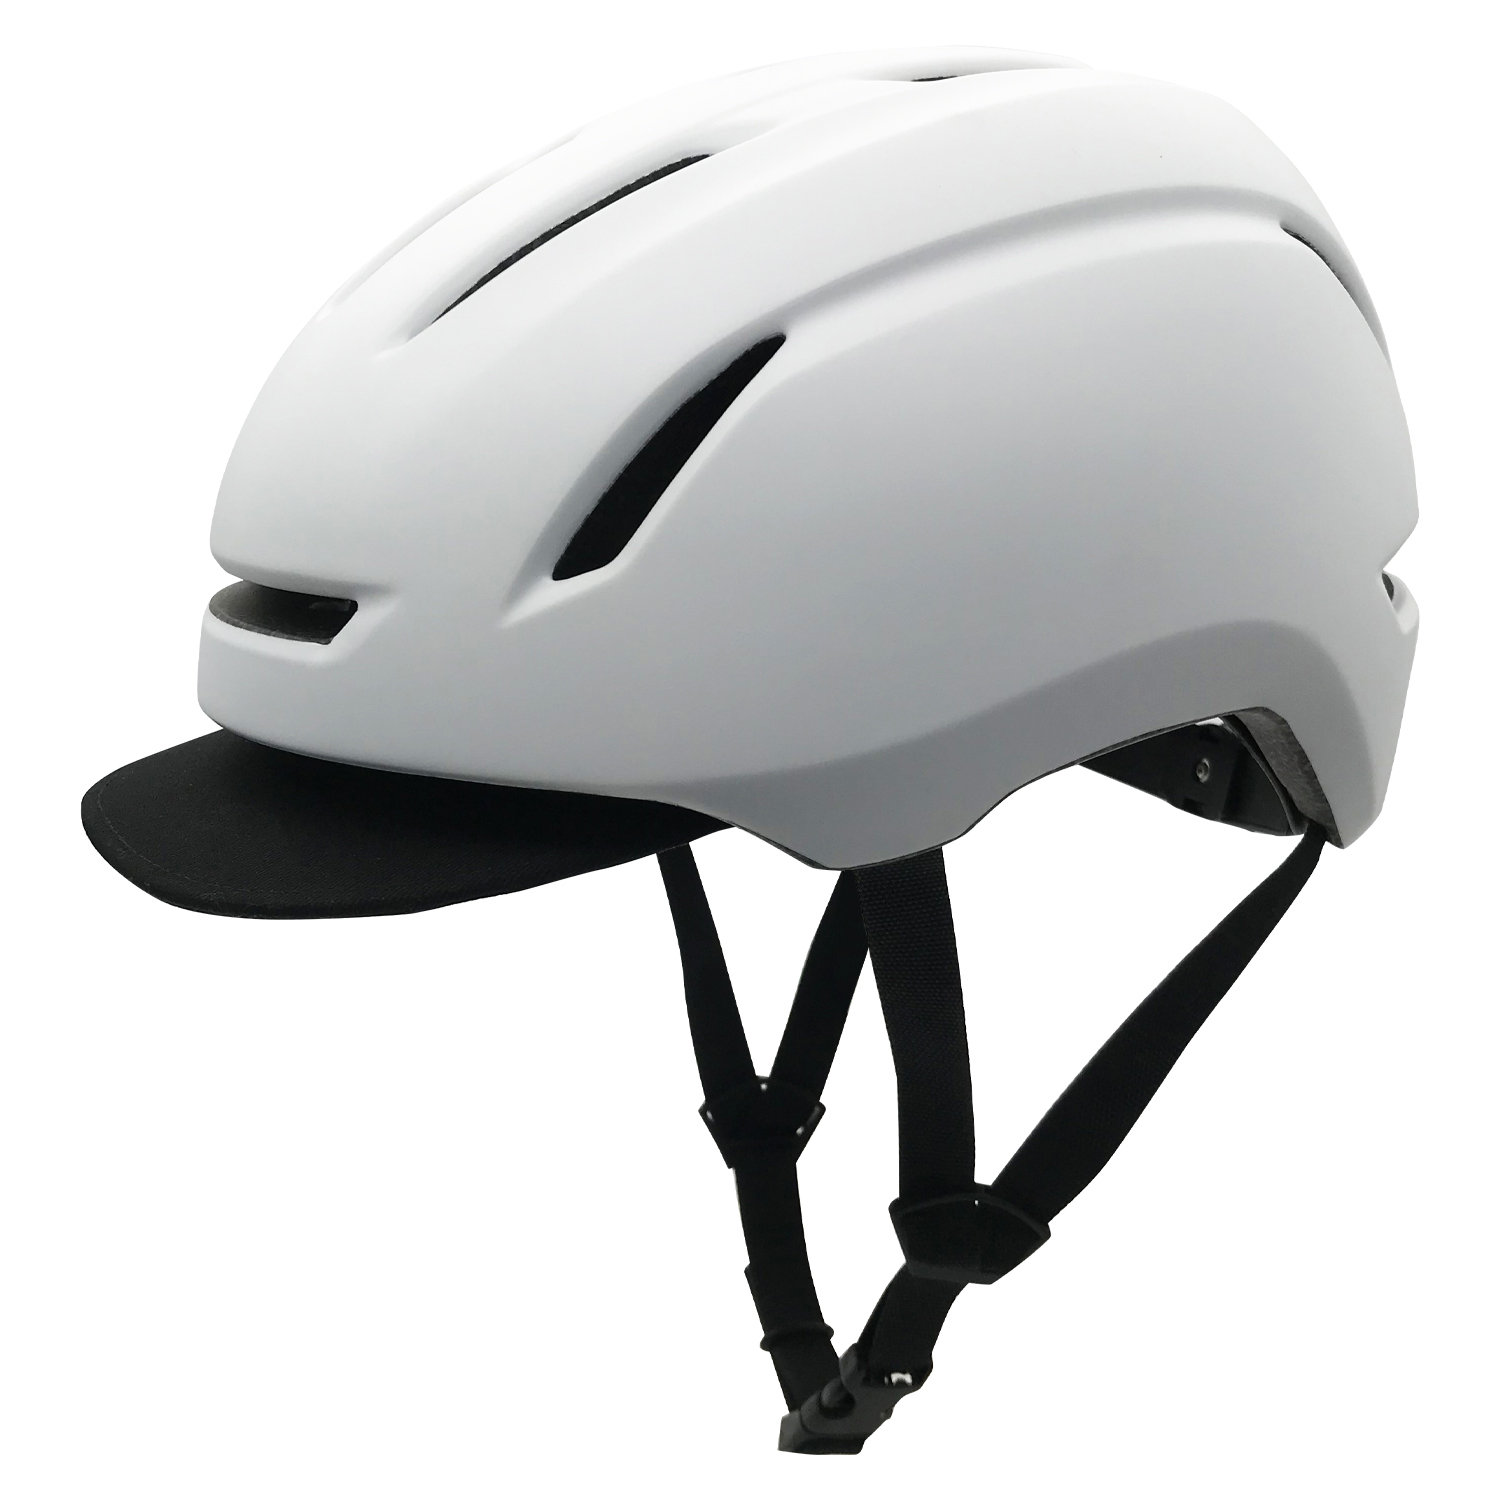 Rapid Delivery for Commuter Bike Helmet - Commuter Helmet VU102-White – Vital